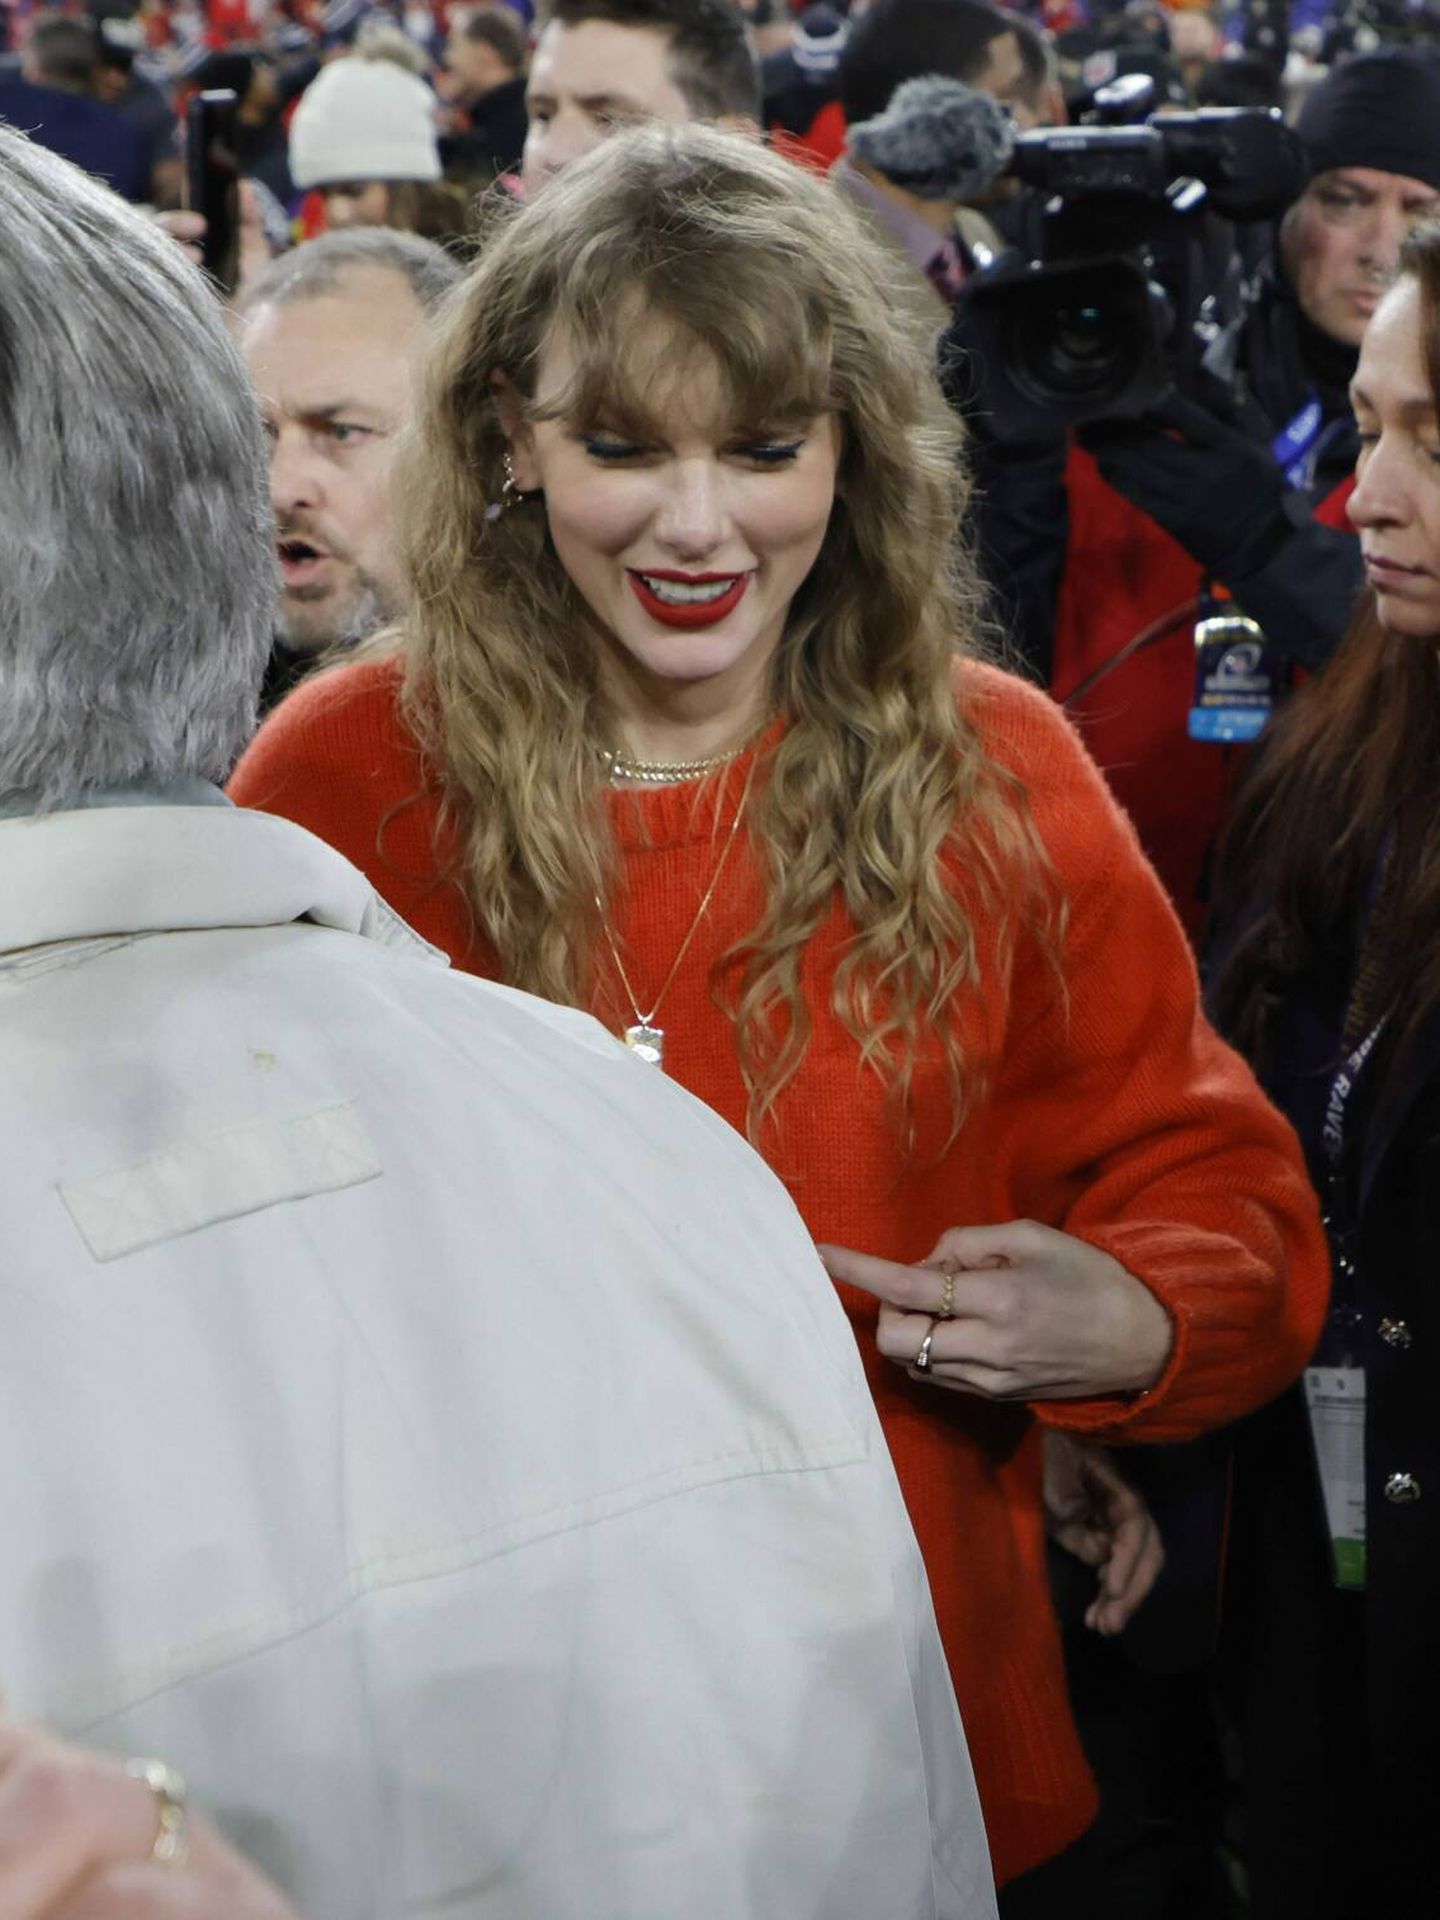 Taylor Swift en el partido de los Kansas City Chiefs. (Cordon Press/Geoff Burke-USA TODAY Sports/Sipa USA)